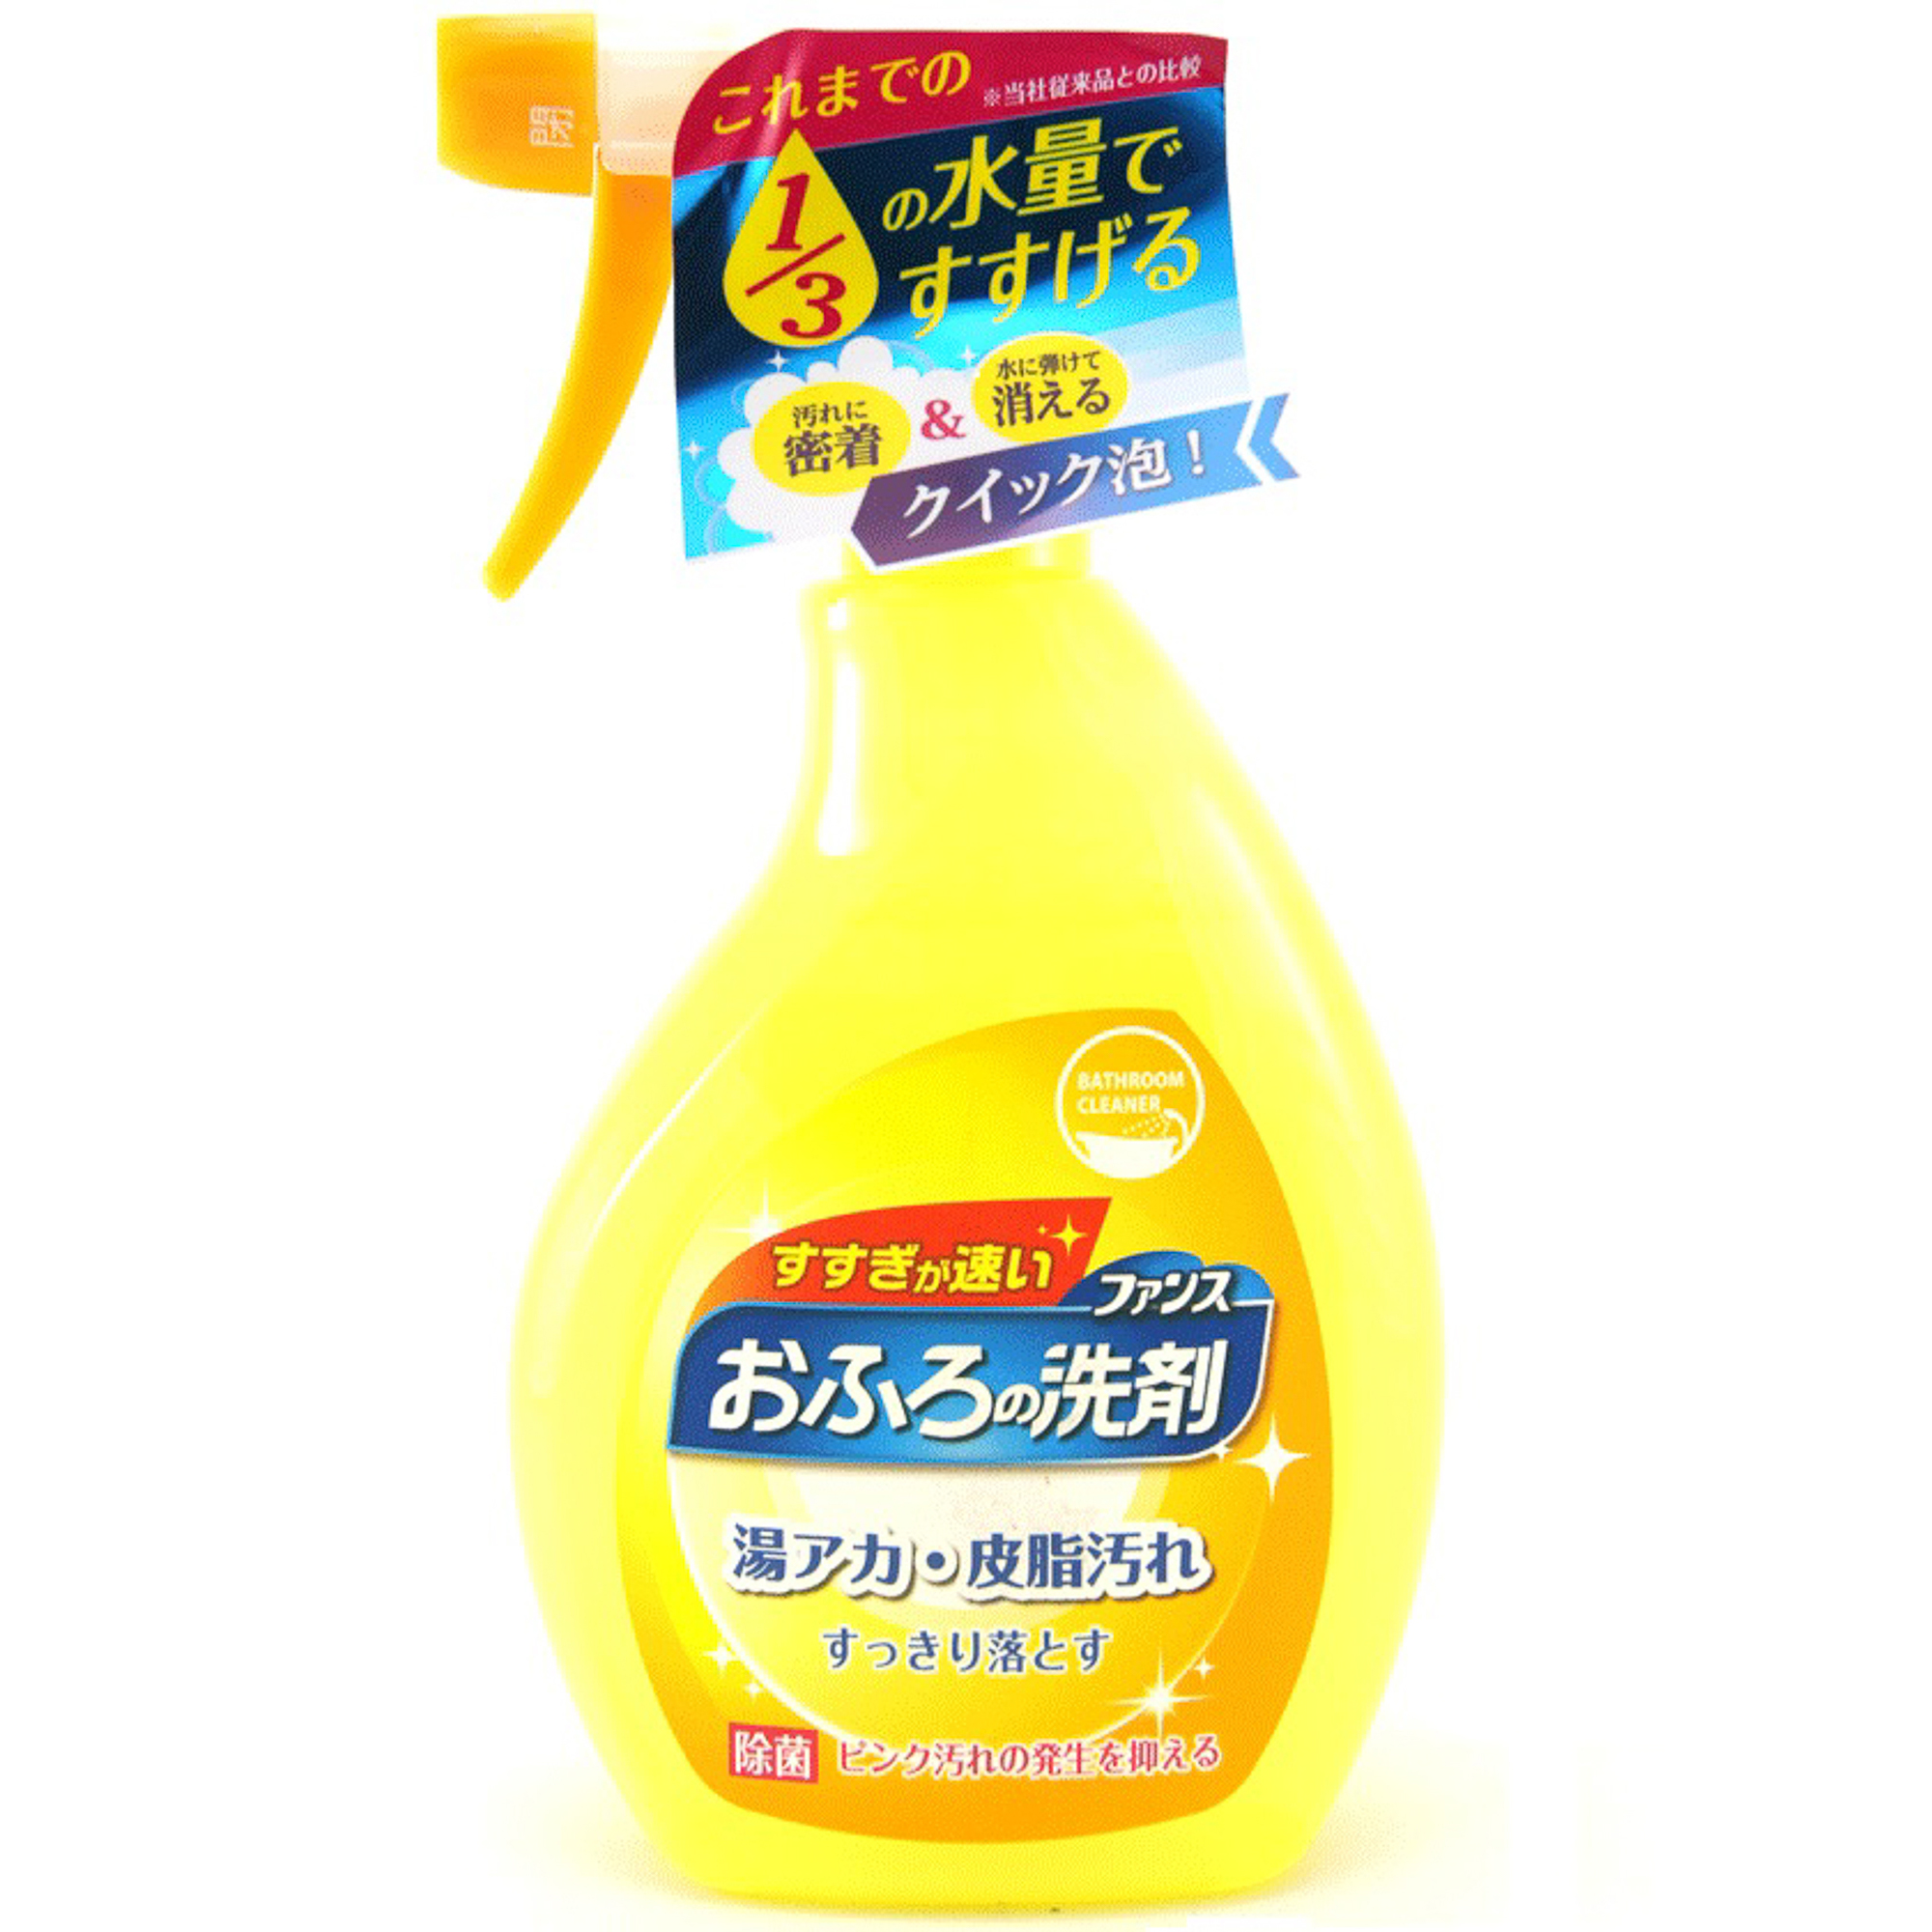 Спрей пенный Daiichi Ofuro для чистки в ванной комнате 380 мл цена и фото